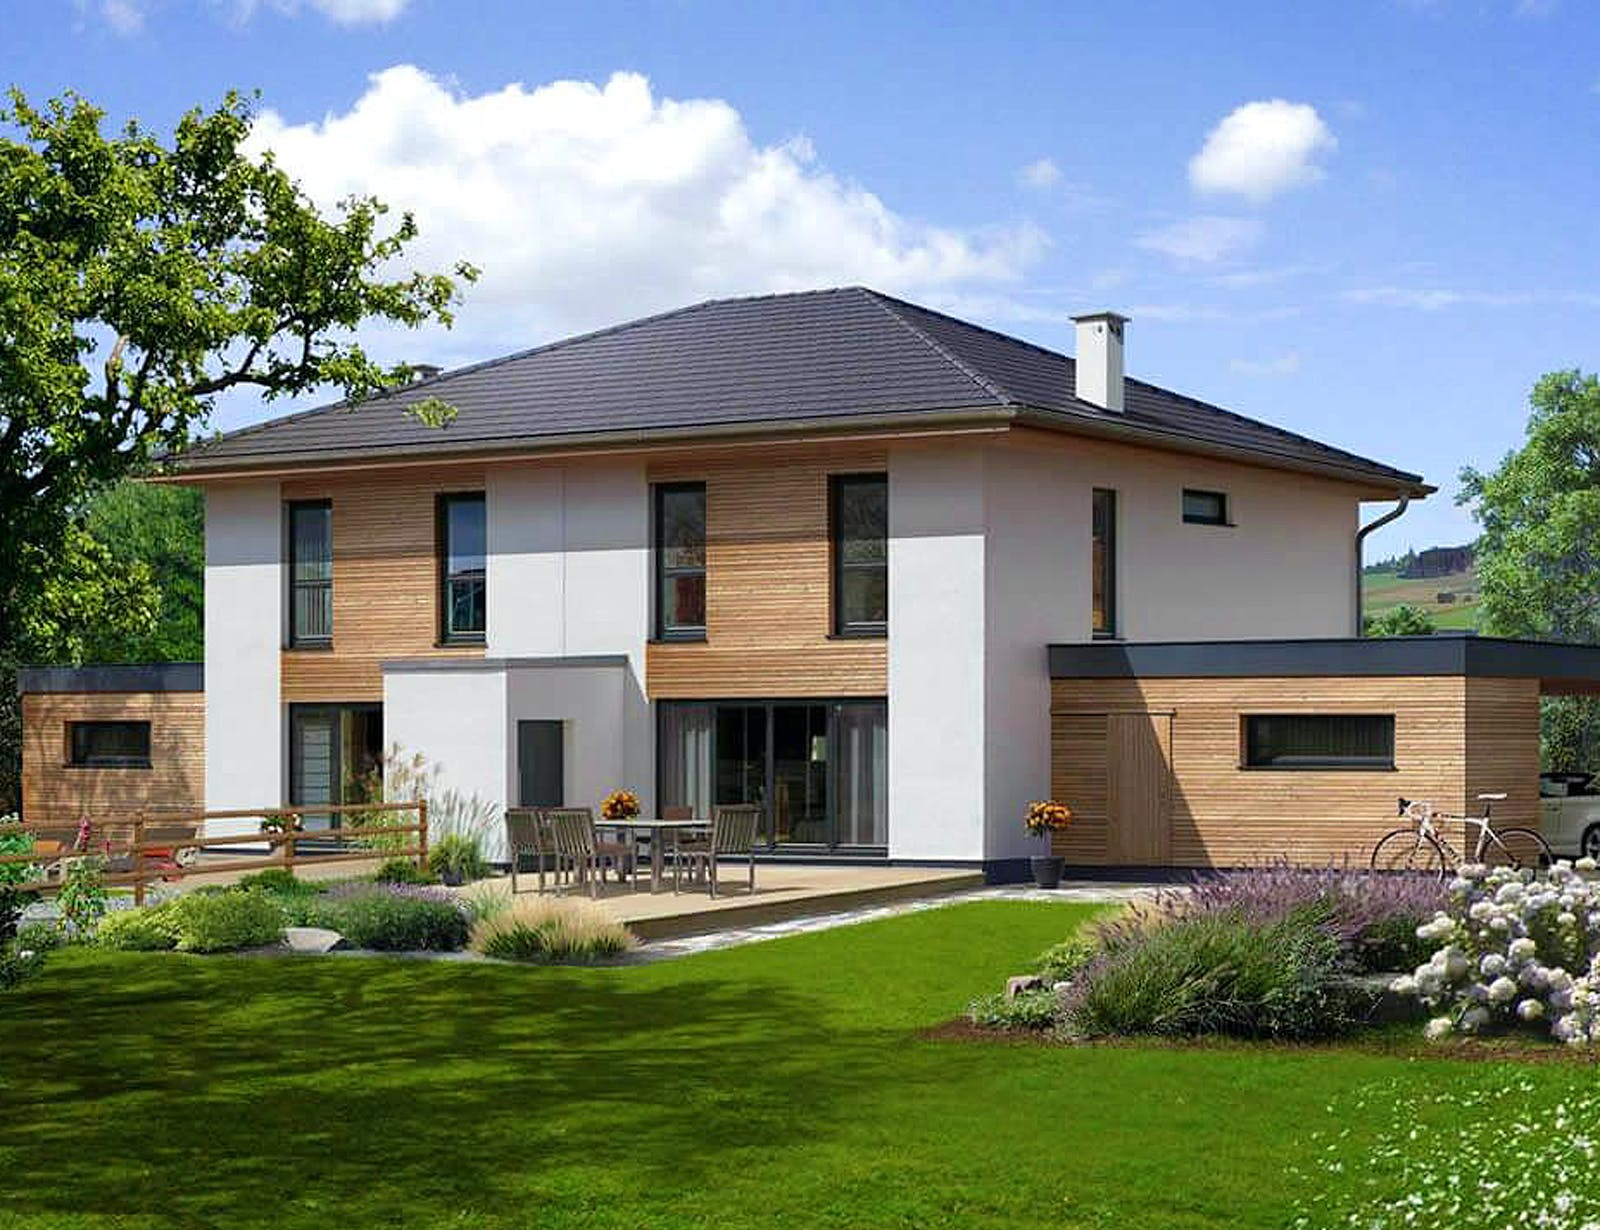 Fertighaus Doppelhaus 140 W von Hartl Haus Schlüsselfertig ab 286208€, Stadtvilla Außenansicht 1